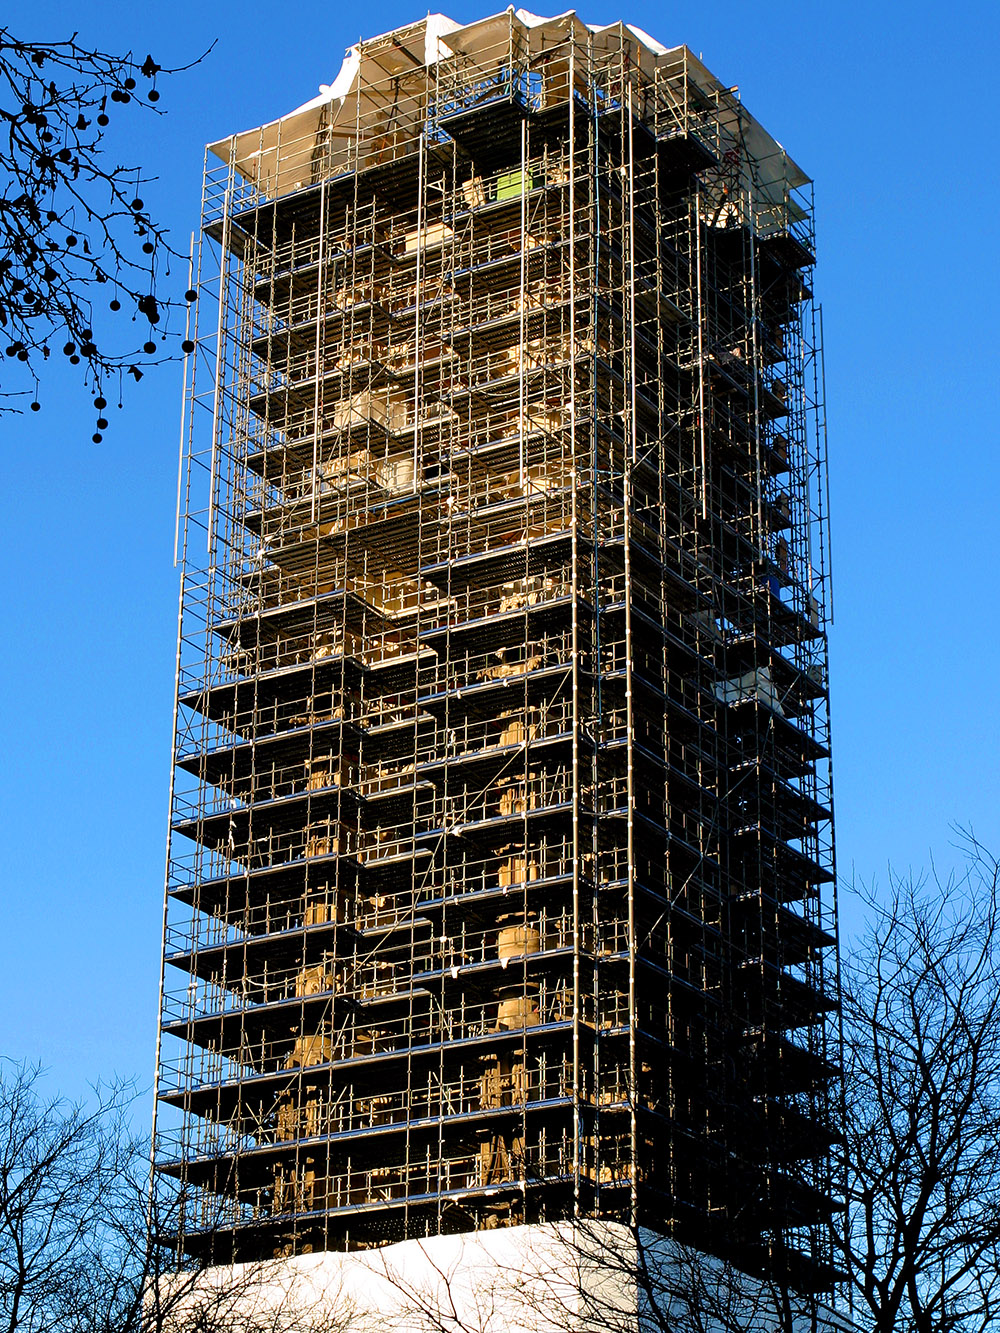 france/paris_tower_construction